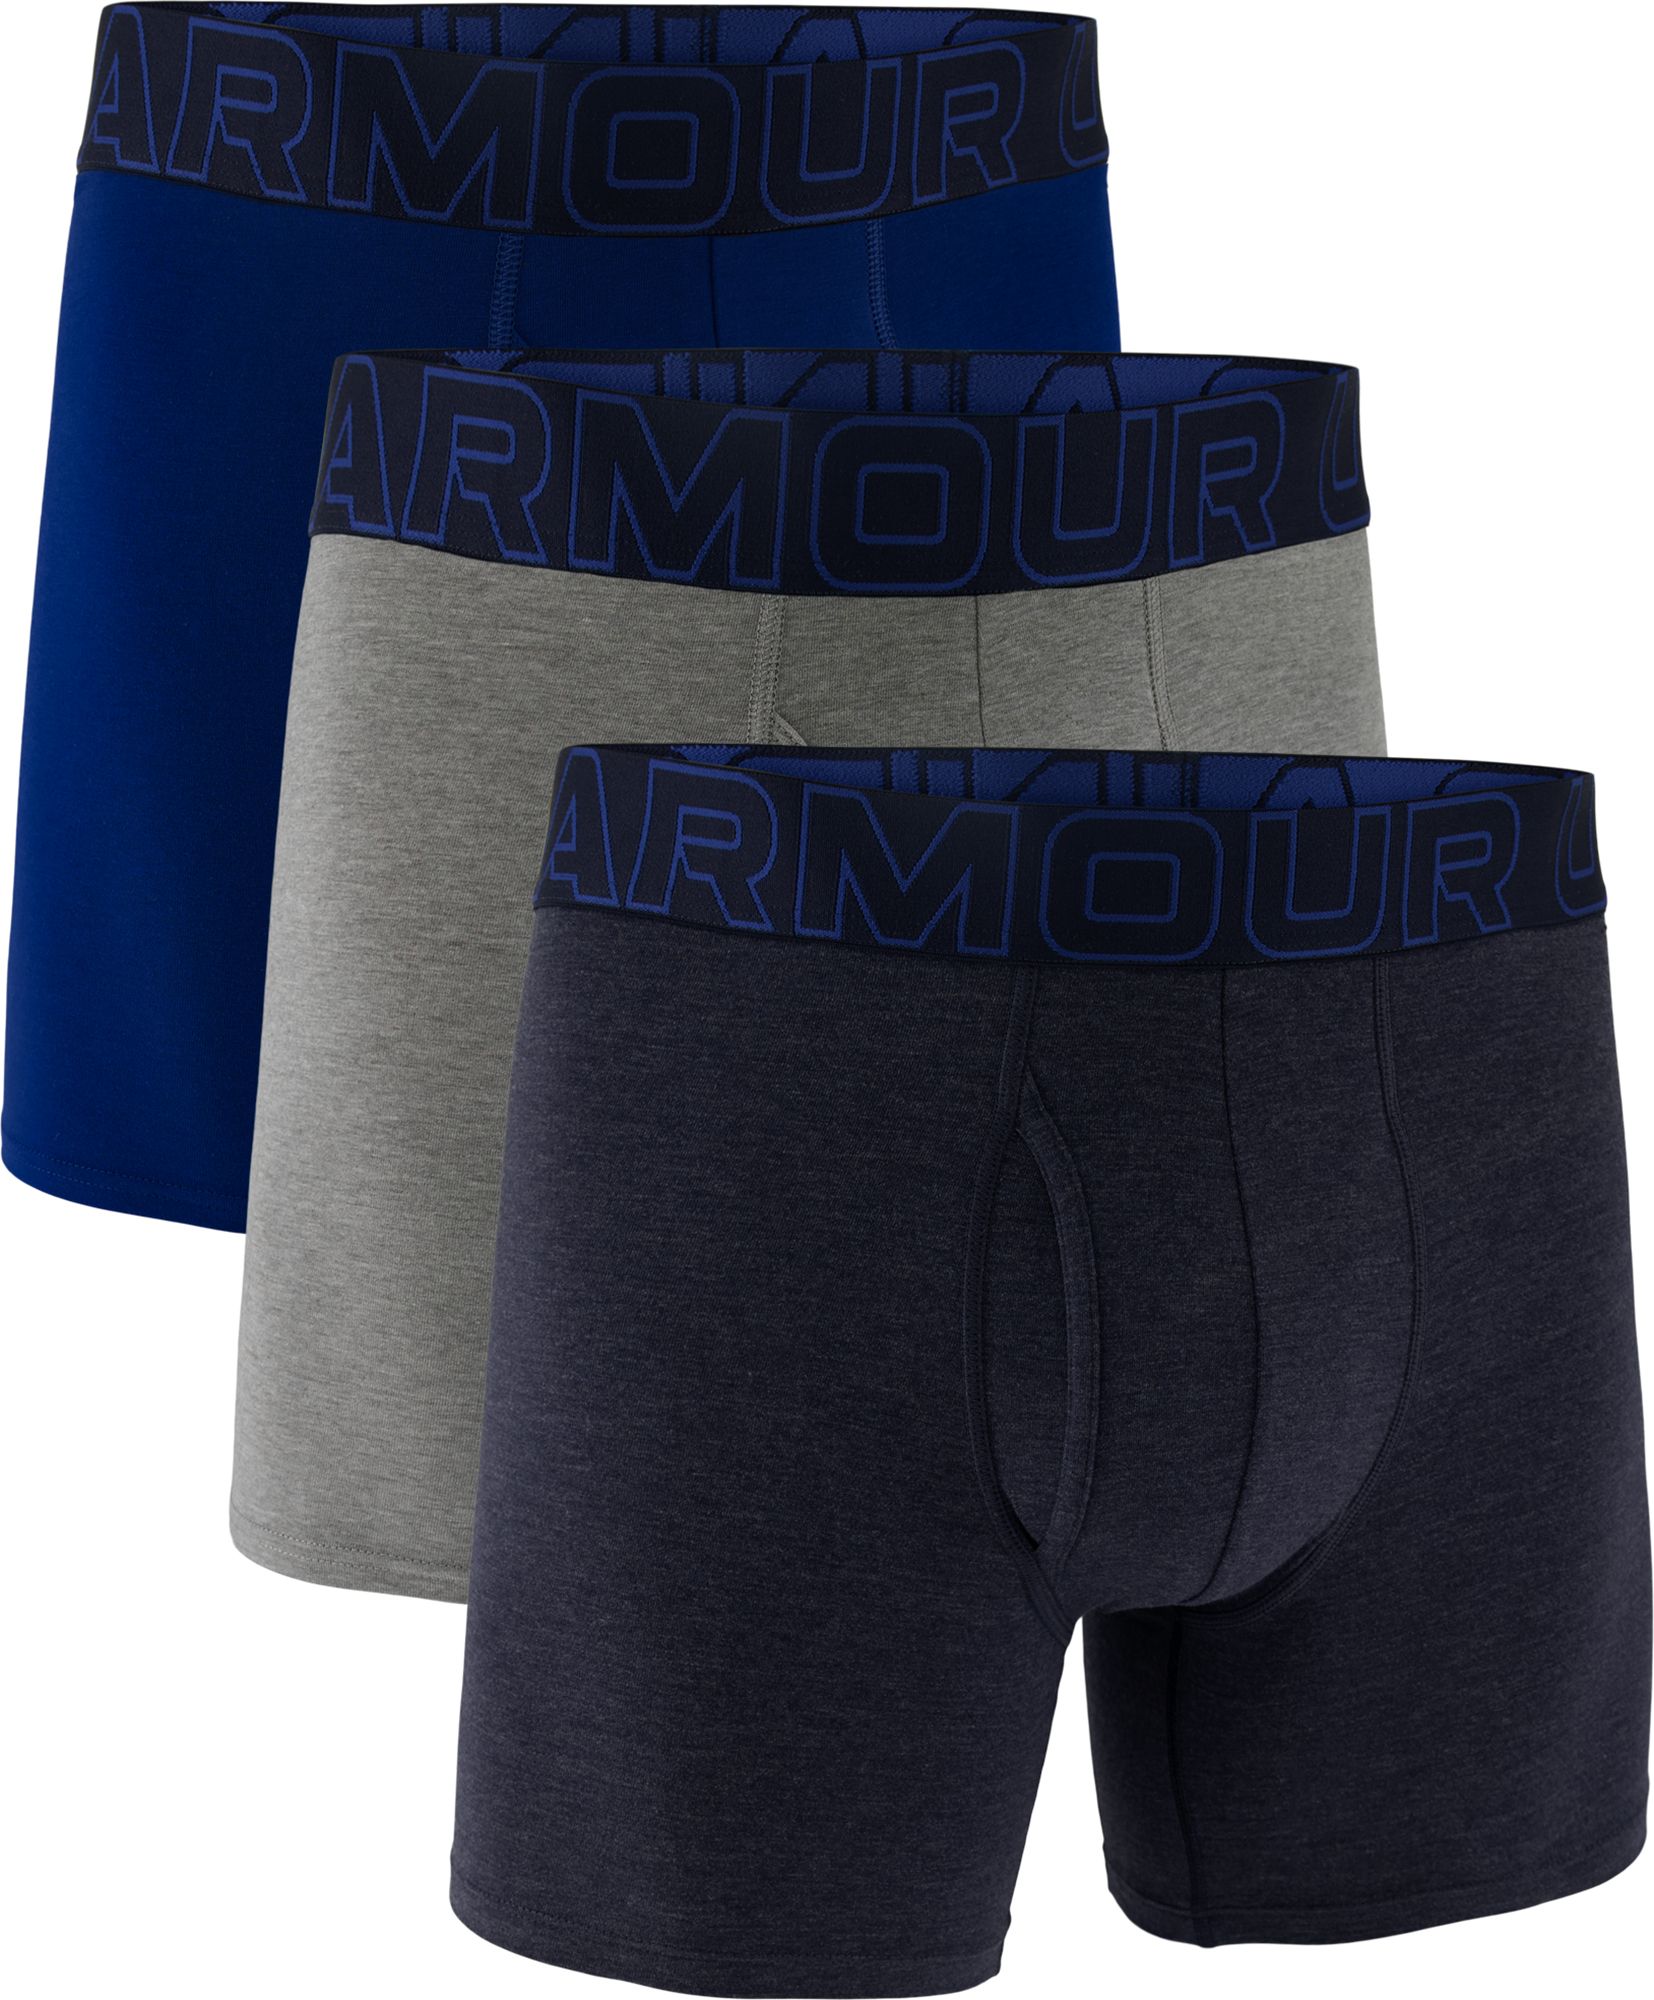 Under Armour Mens UA Performance Cotton 6 Boxer Briefs 3 Pack